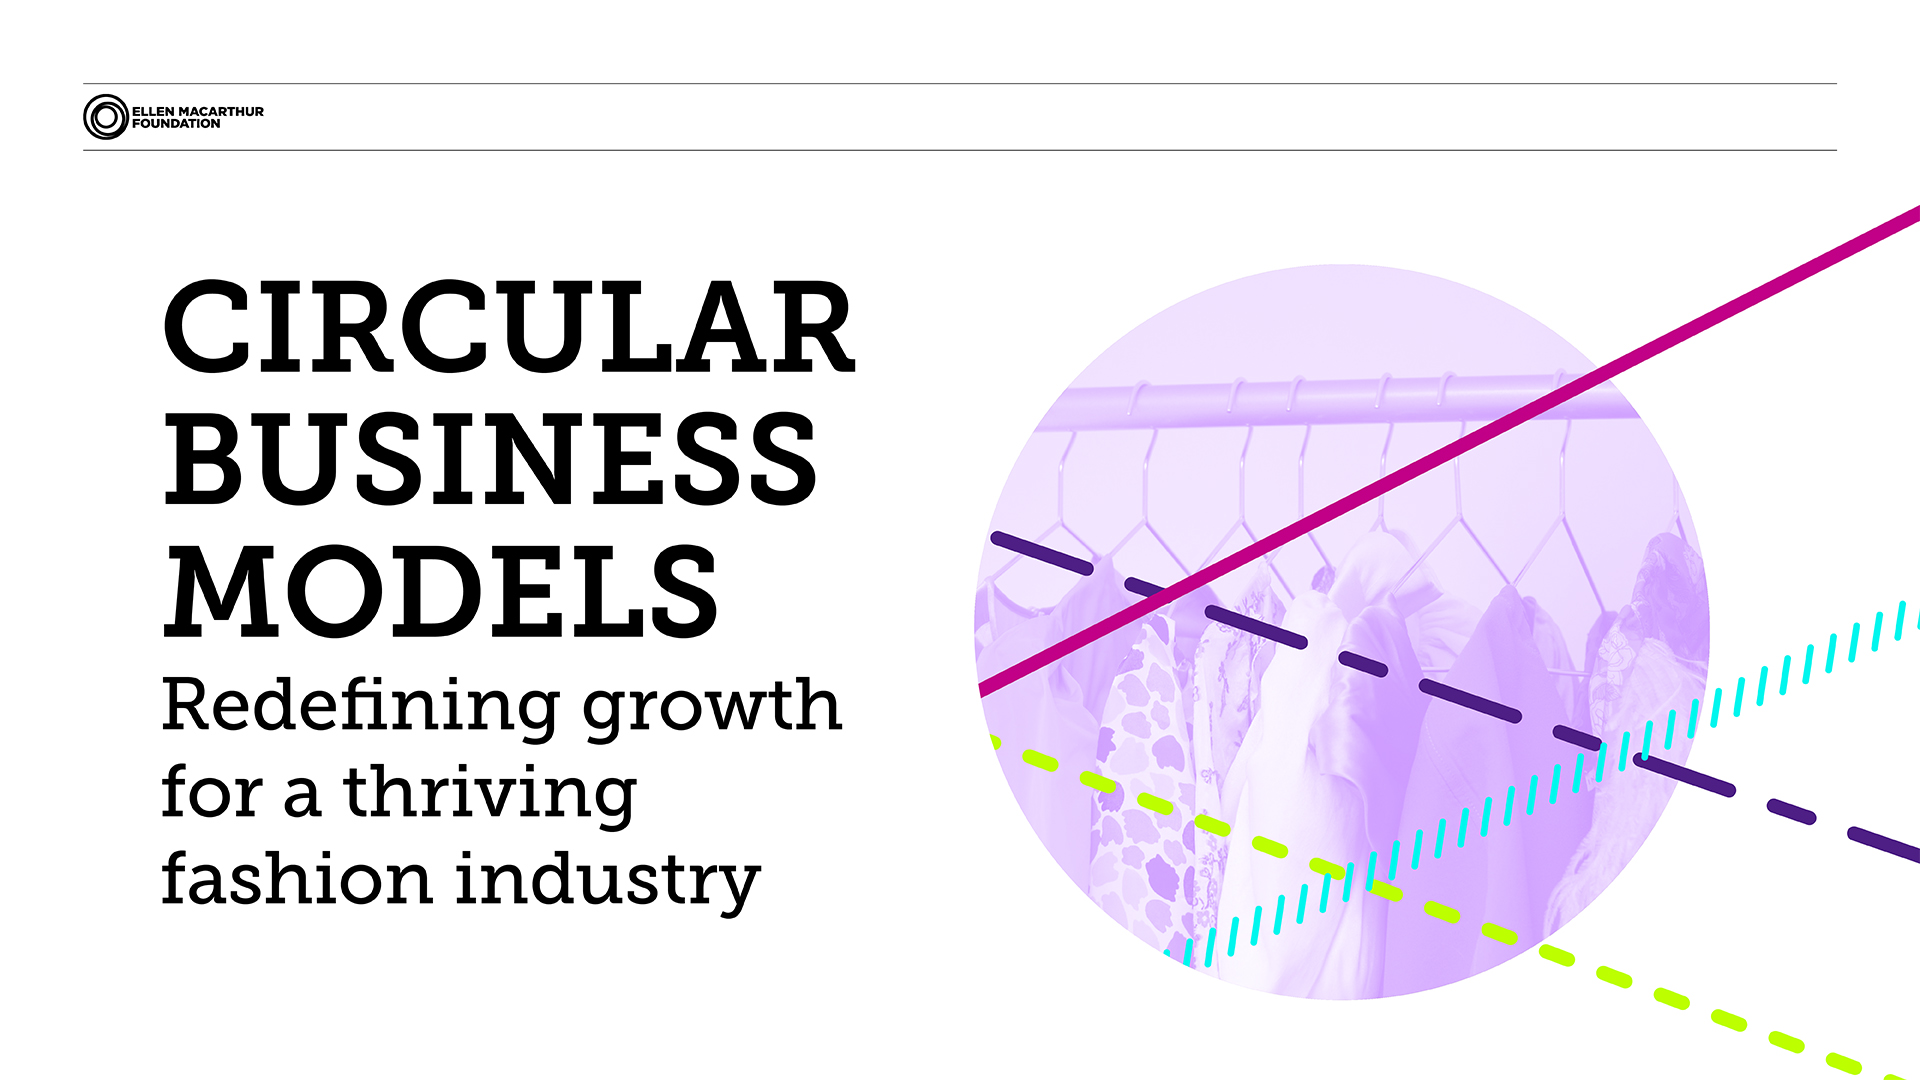 Circular business model report image